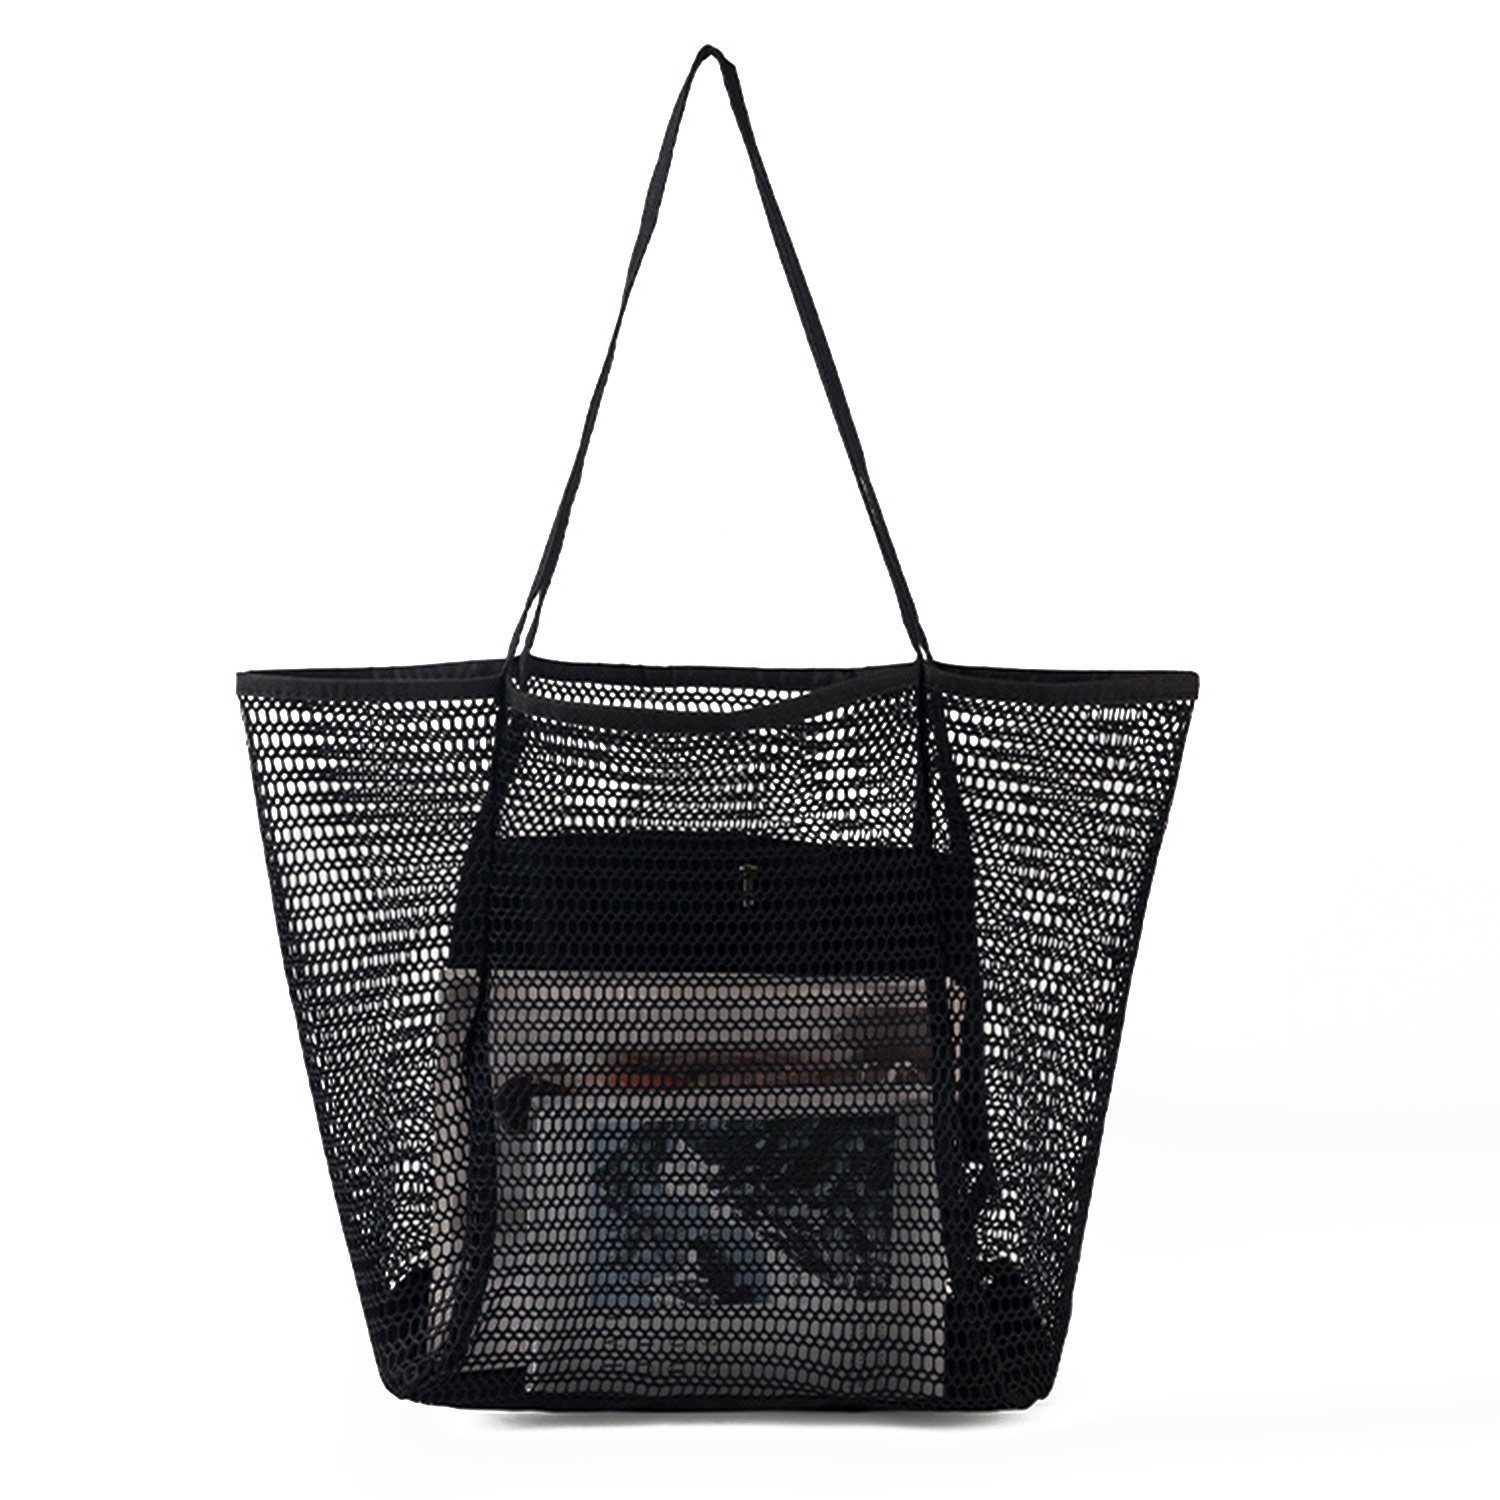 Mesh-Strandtasche, Schwarz Einkaufstasche mit große Damen-Badetasche, Innentasche Schultertasche, Reißverschluss, MAGICSHE Trachtentasche